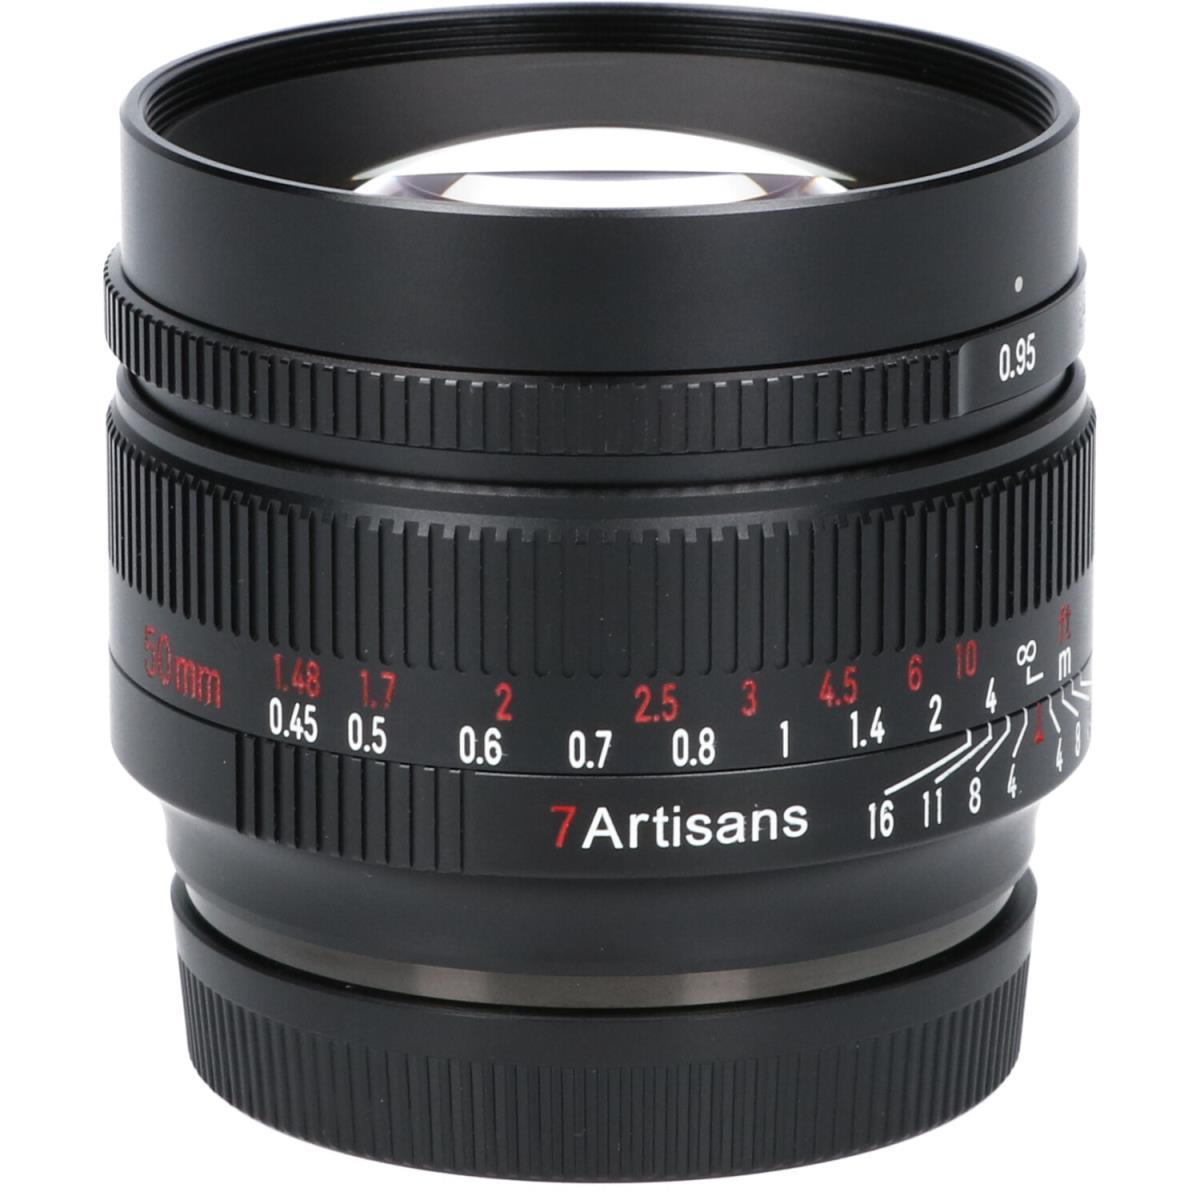 えあじ様 七工匠 7Artisans 35mm F0.95 (APS-C) - レンズ(単焦点)